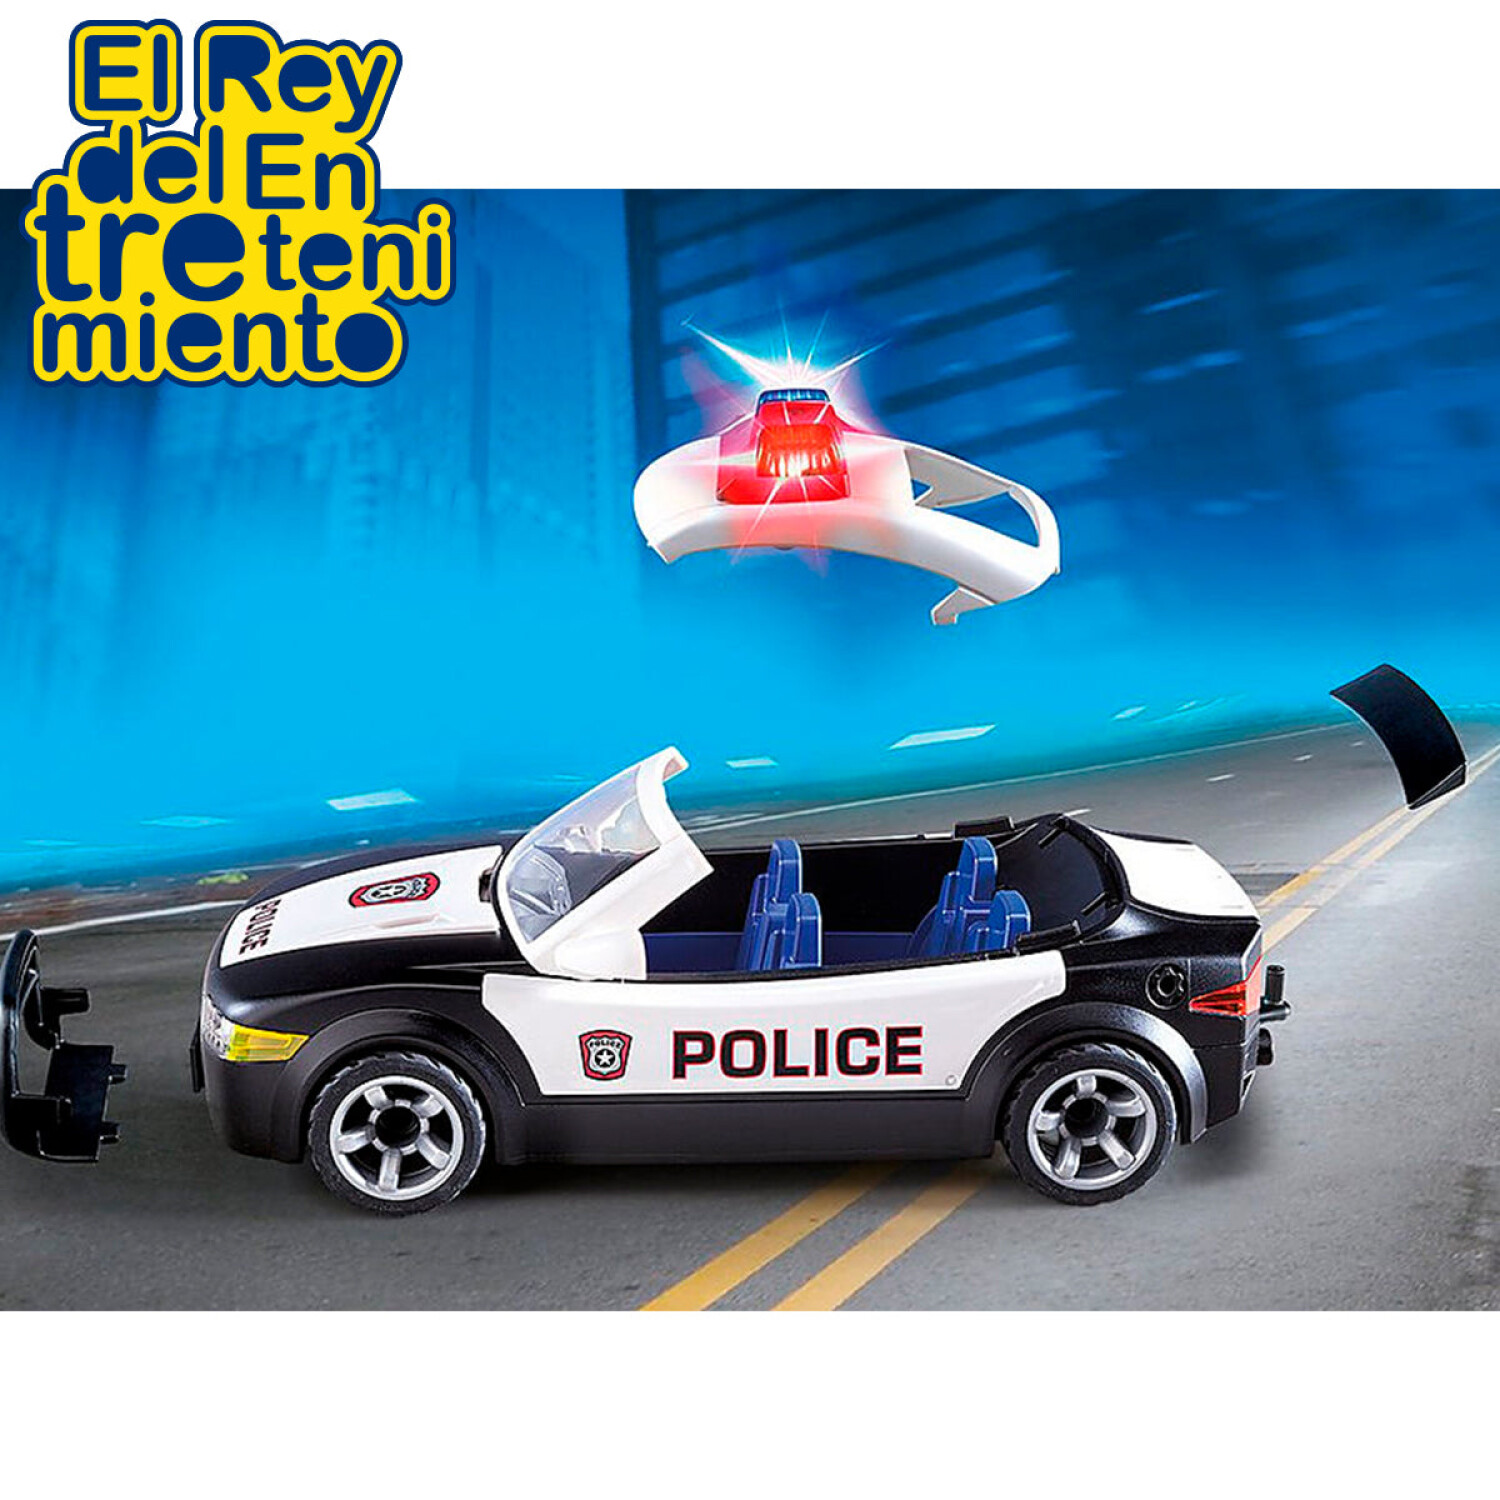 Playmobil - Coche Policía Cruiser - 5673, City Action Policia